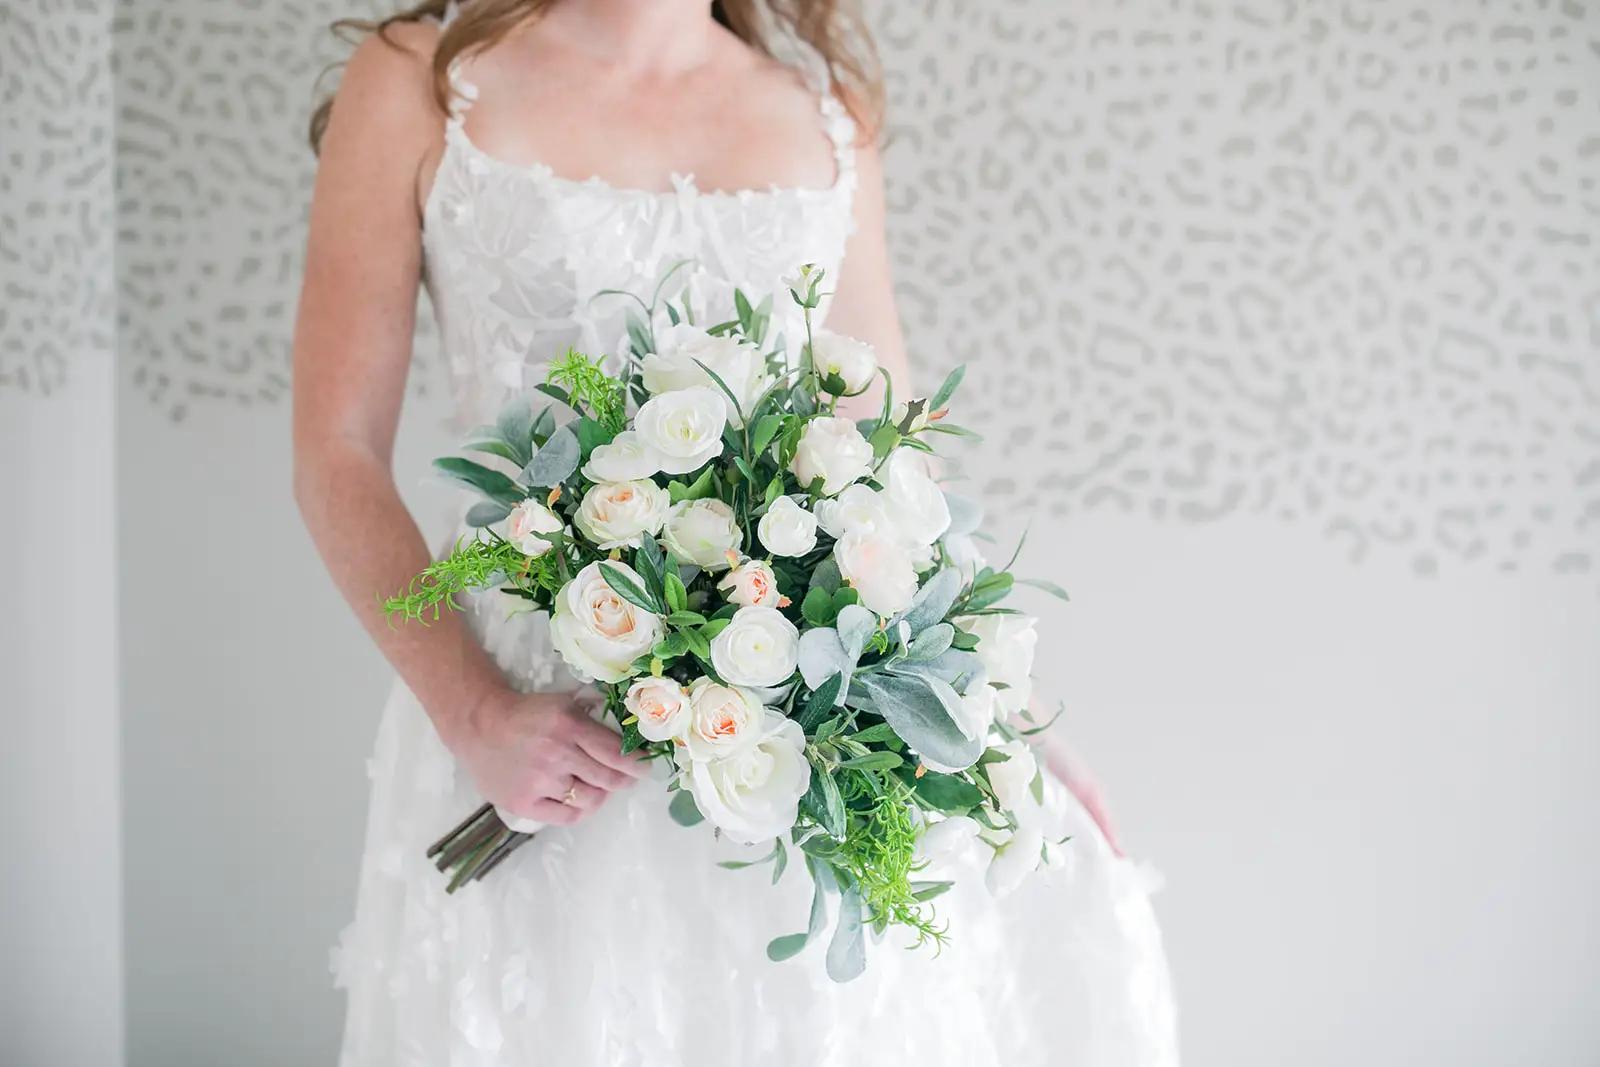 Blooming Beautiful: Sustainable Wedding Flowers. Desktop Image